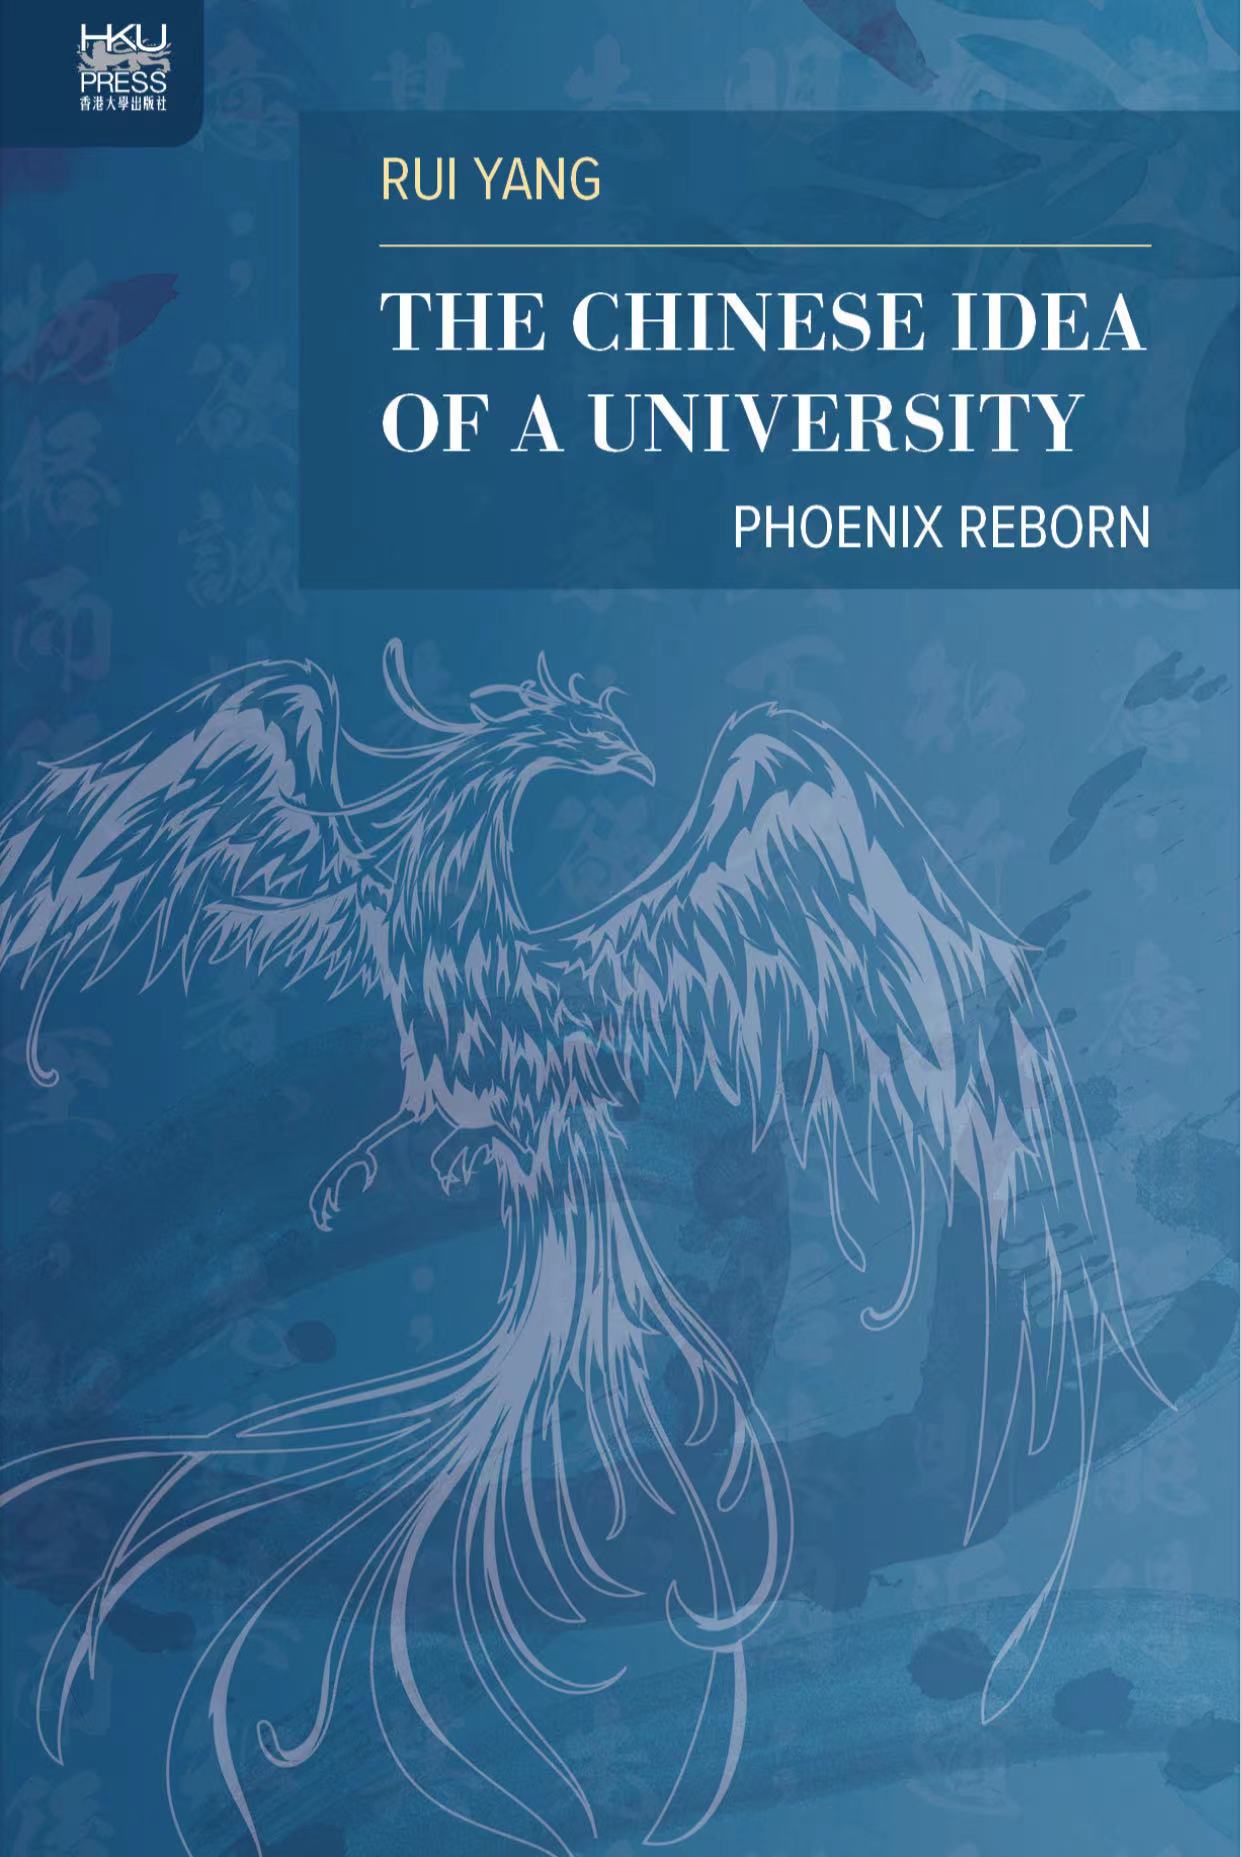 Book cover - Yang Rui - Chinese idea of a university - Pheonix reborn